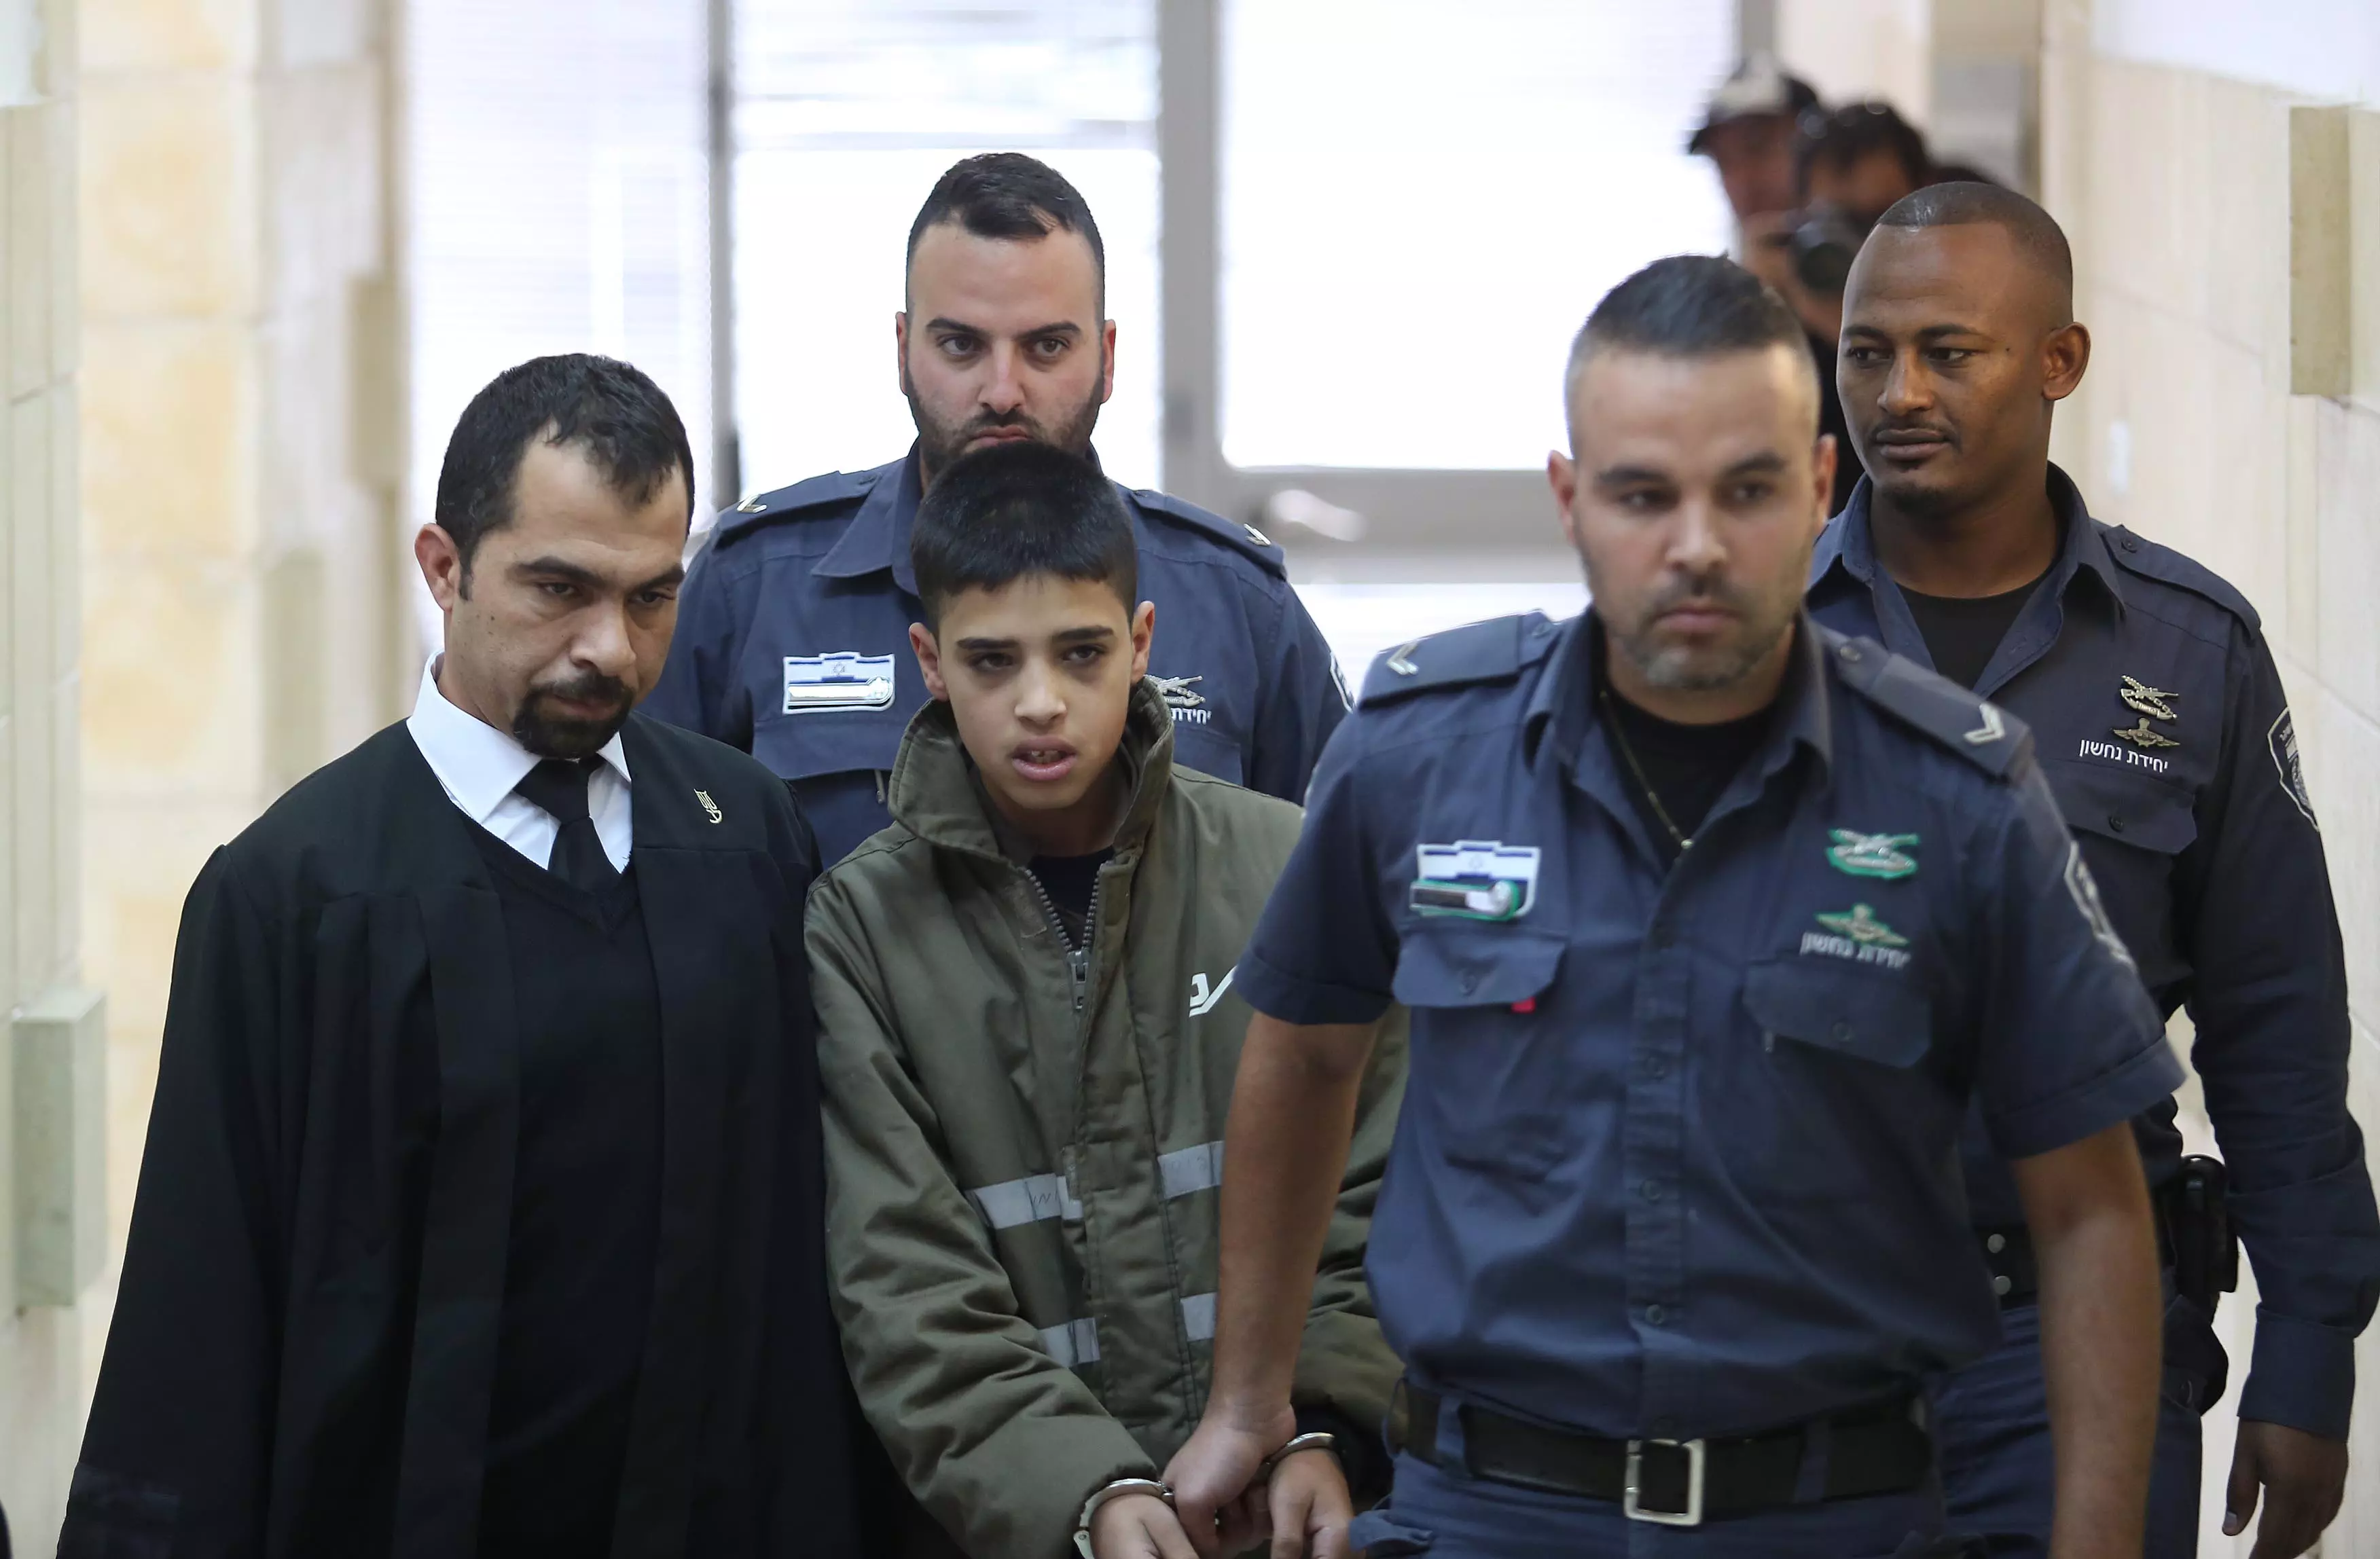 אחמד מנאסרה, המחבל בן ה-13, בבית המשפט המחוזי בירושלים